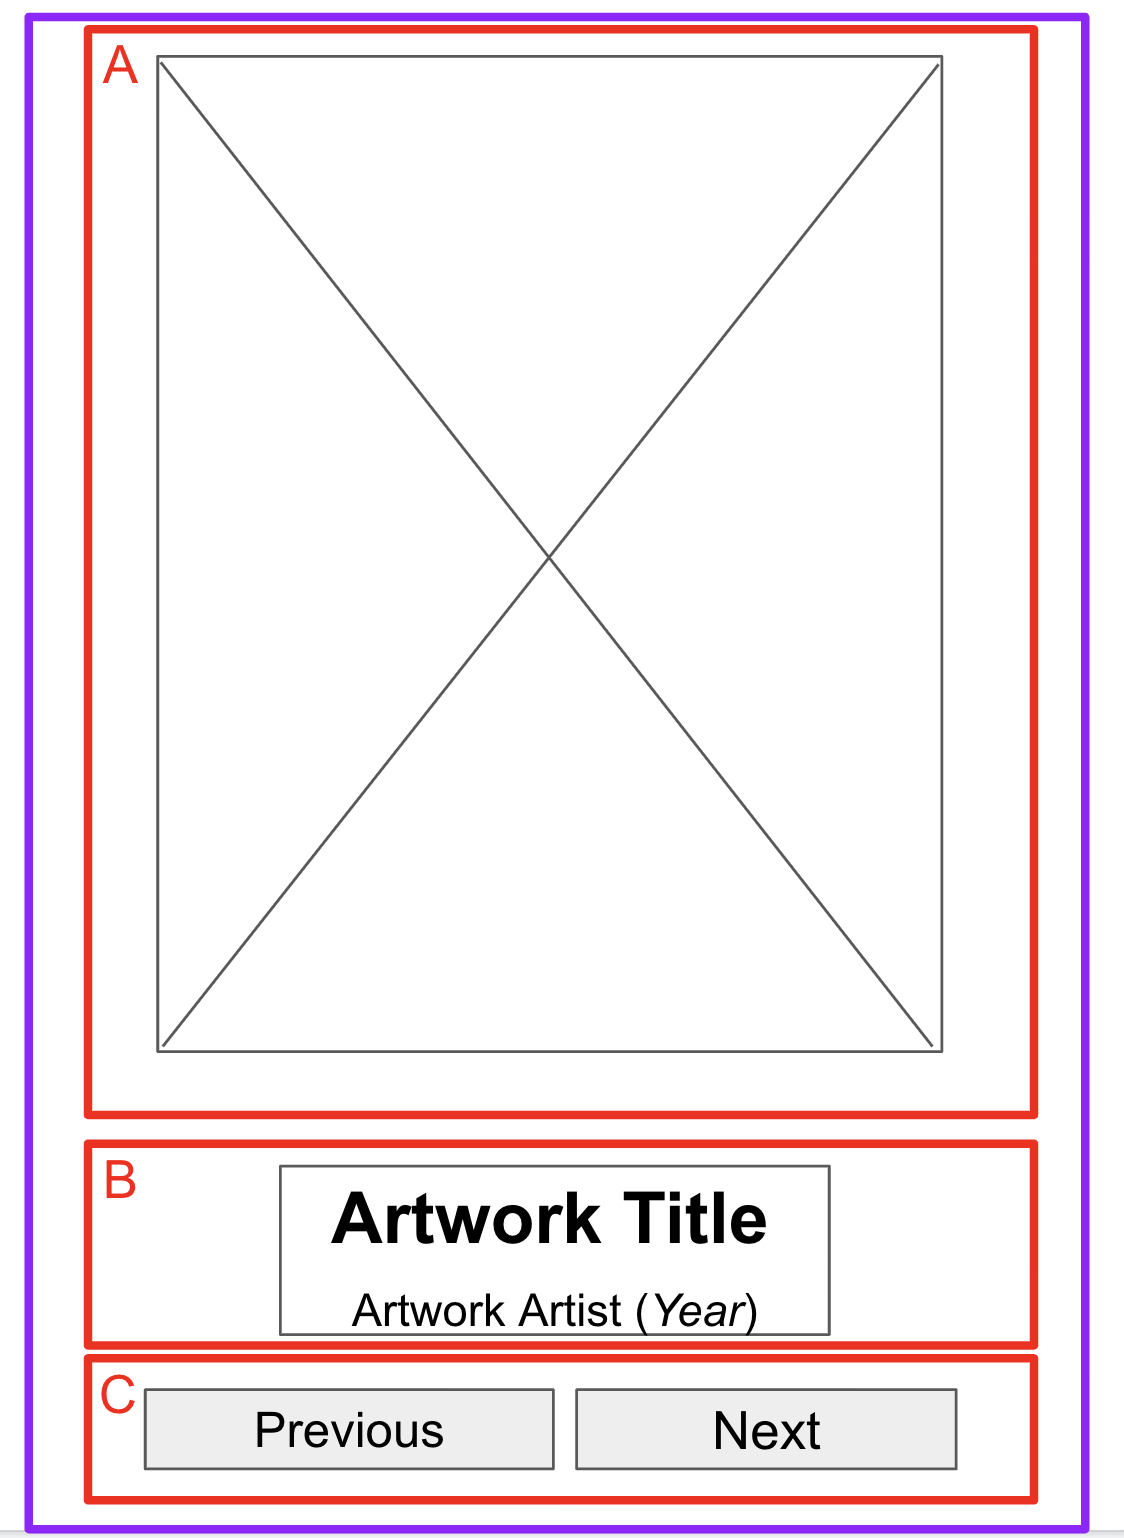 低擬真度原型上繪製了界線，表示三個不同區塊的外框。